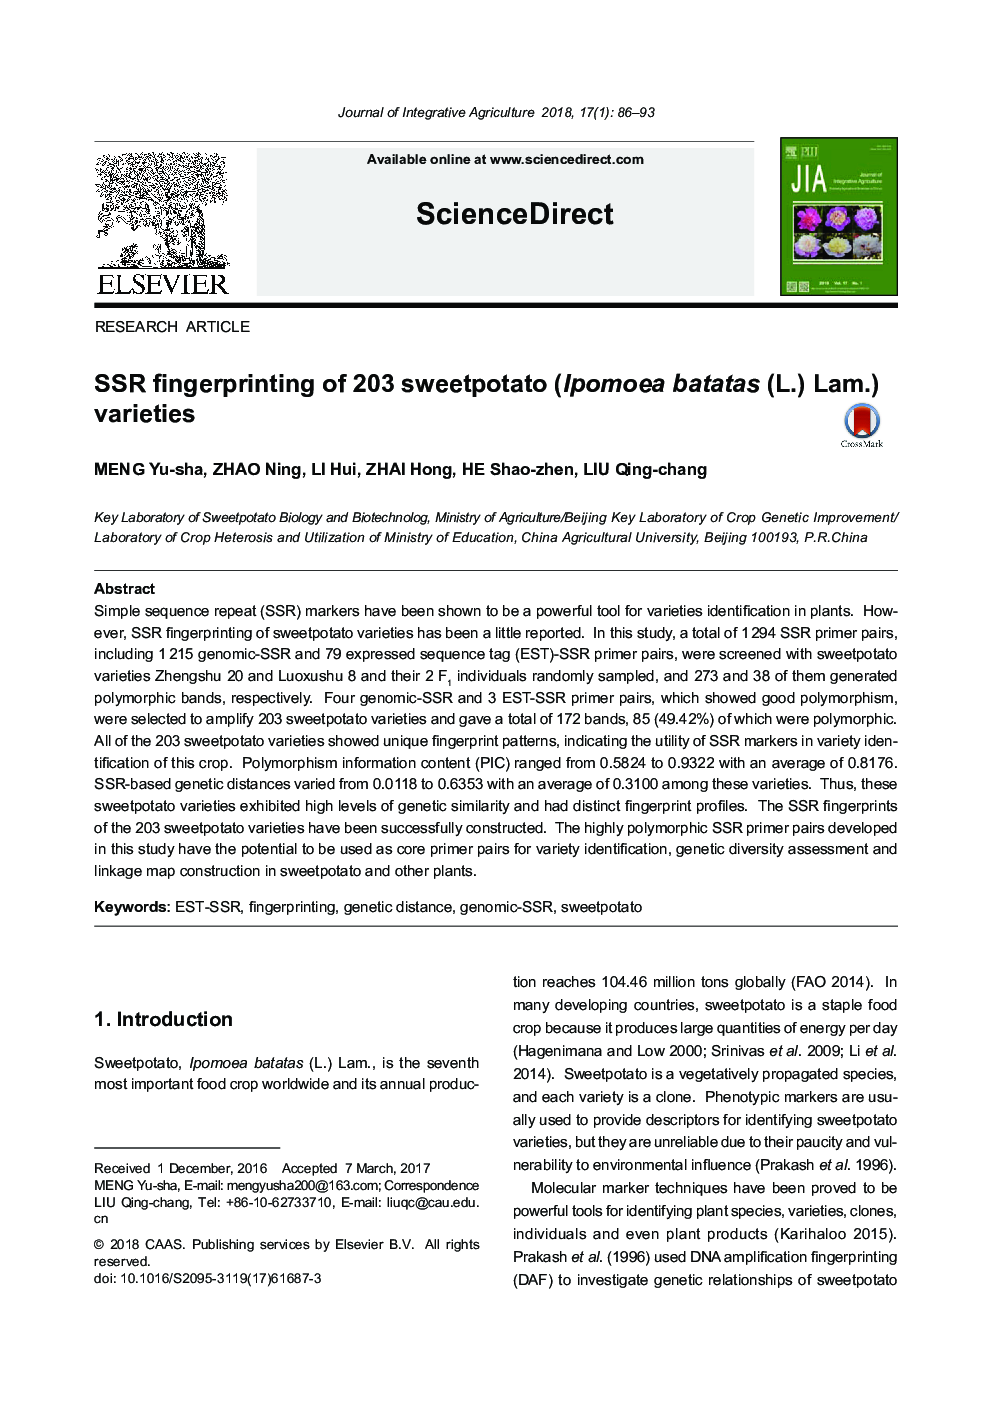 SSR fingerprinting of 203 sweetpotato (Ipomoea batatas (L.) Lam.) varieties